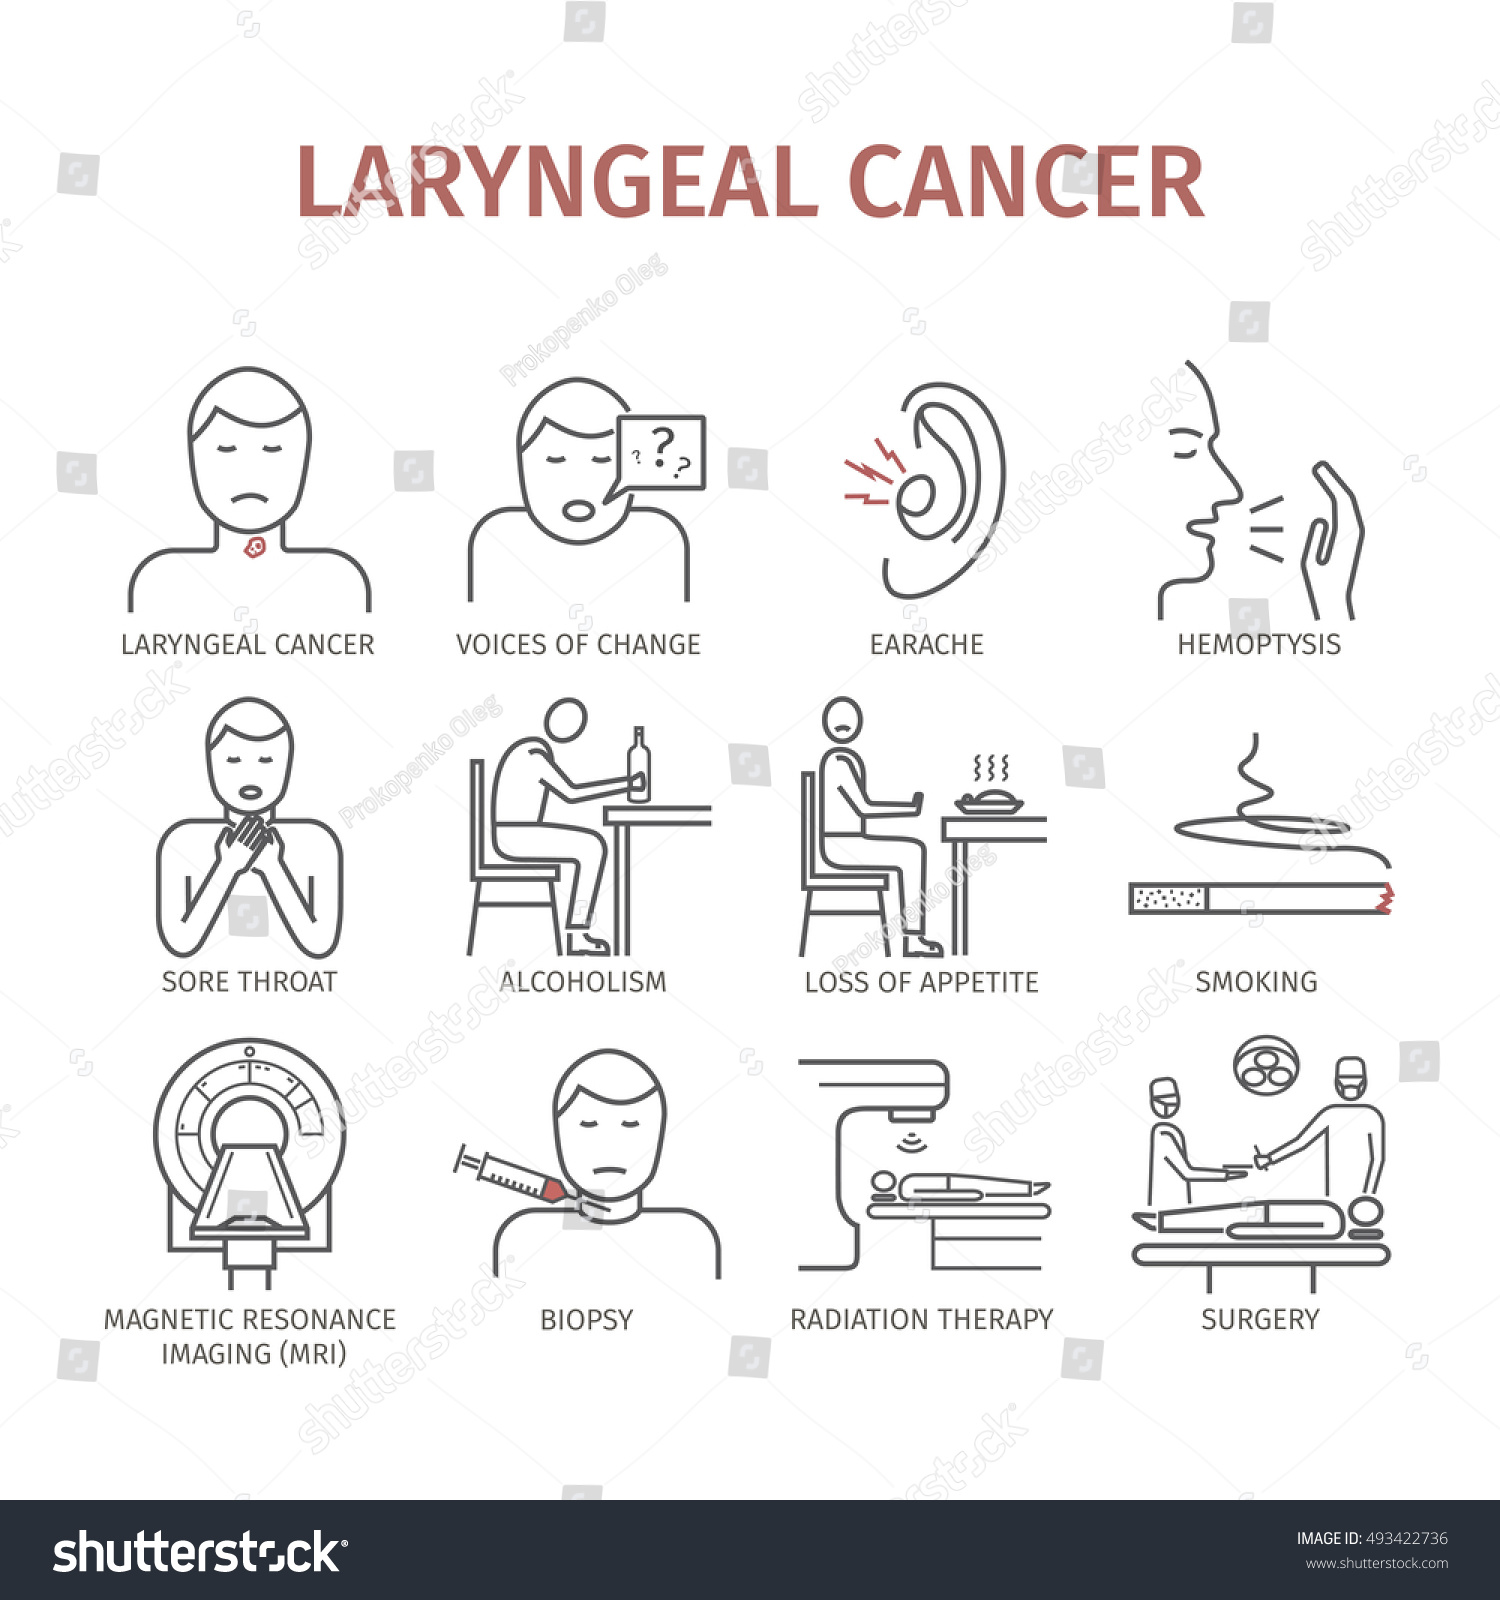 Pathophysiology Of Laryngeal Cancer 1277